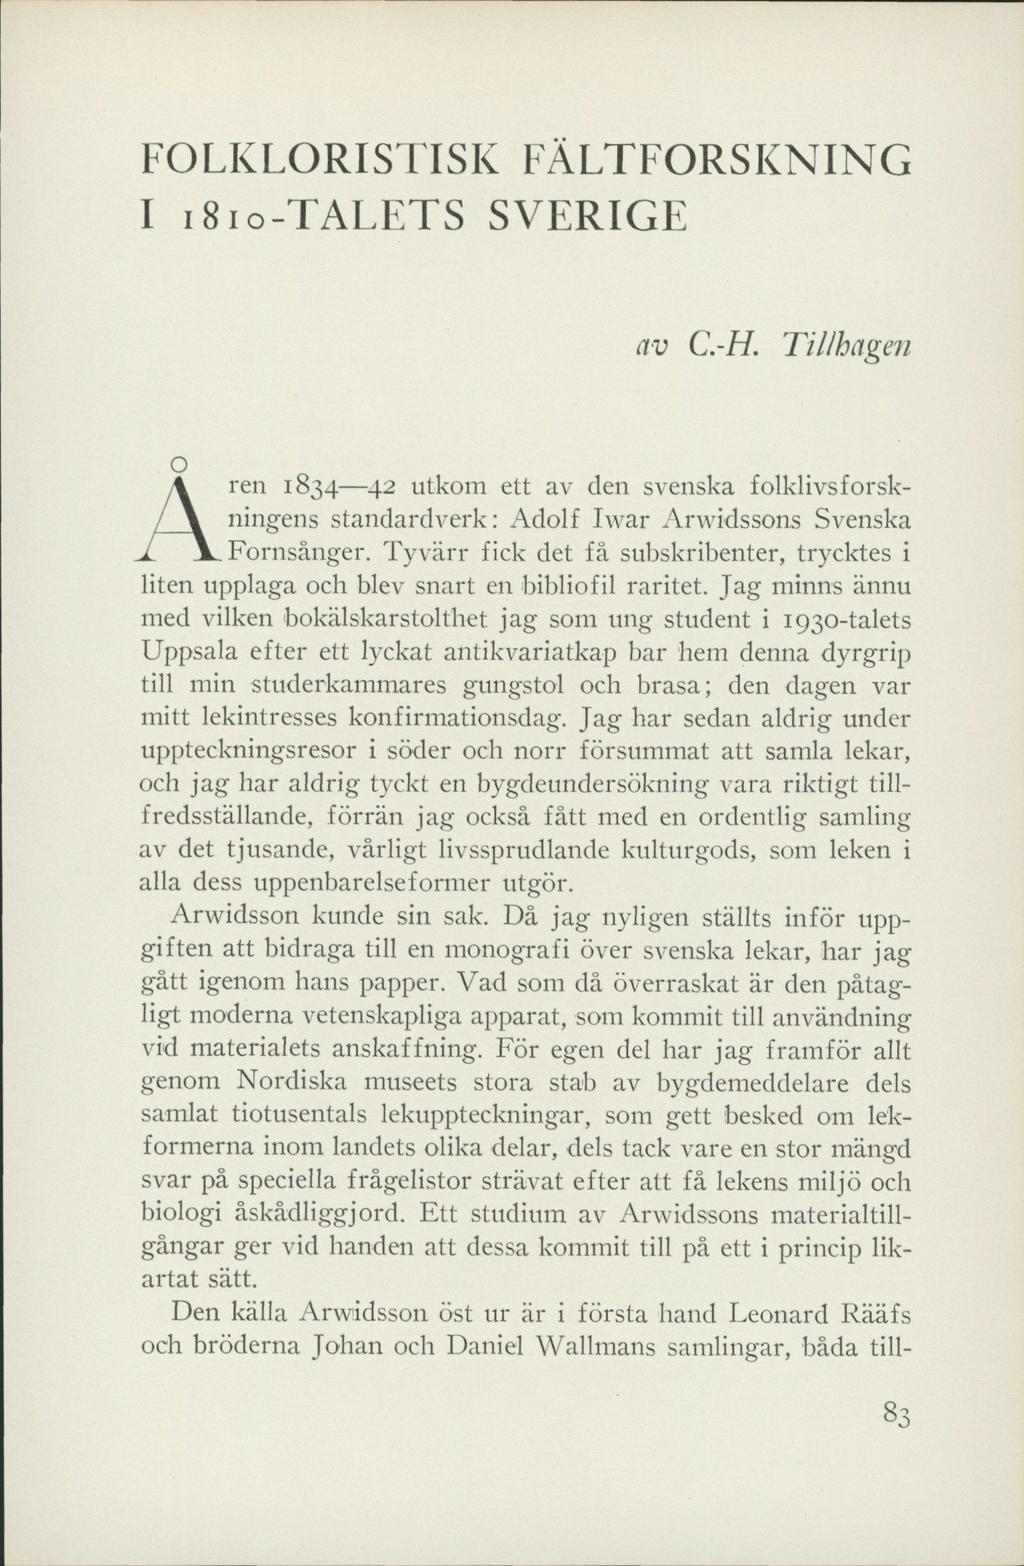 FOLKLORISTISK FÄLTFORSKNING I 1810-TALETS SVERIGE av C.-H. Tillhagen \ren 1834 42 utkom ett av den svenska folklivsforskningens standardverk: Adolf Iwar Arwidssons Svenska Fornsånger.